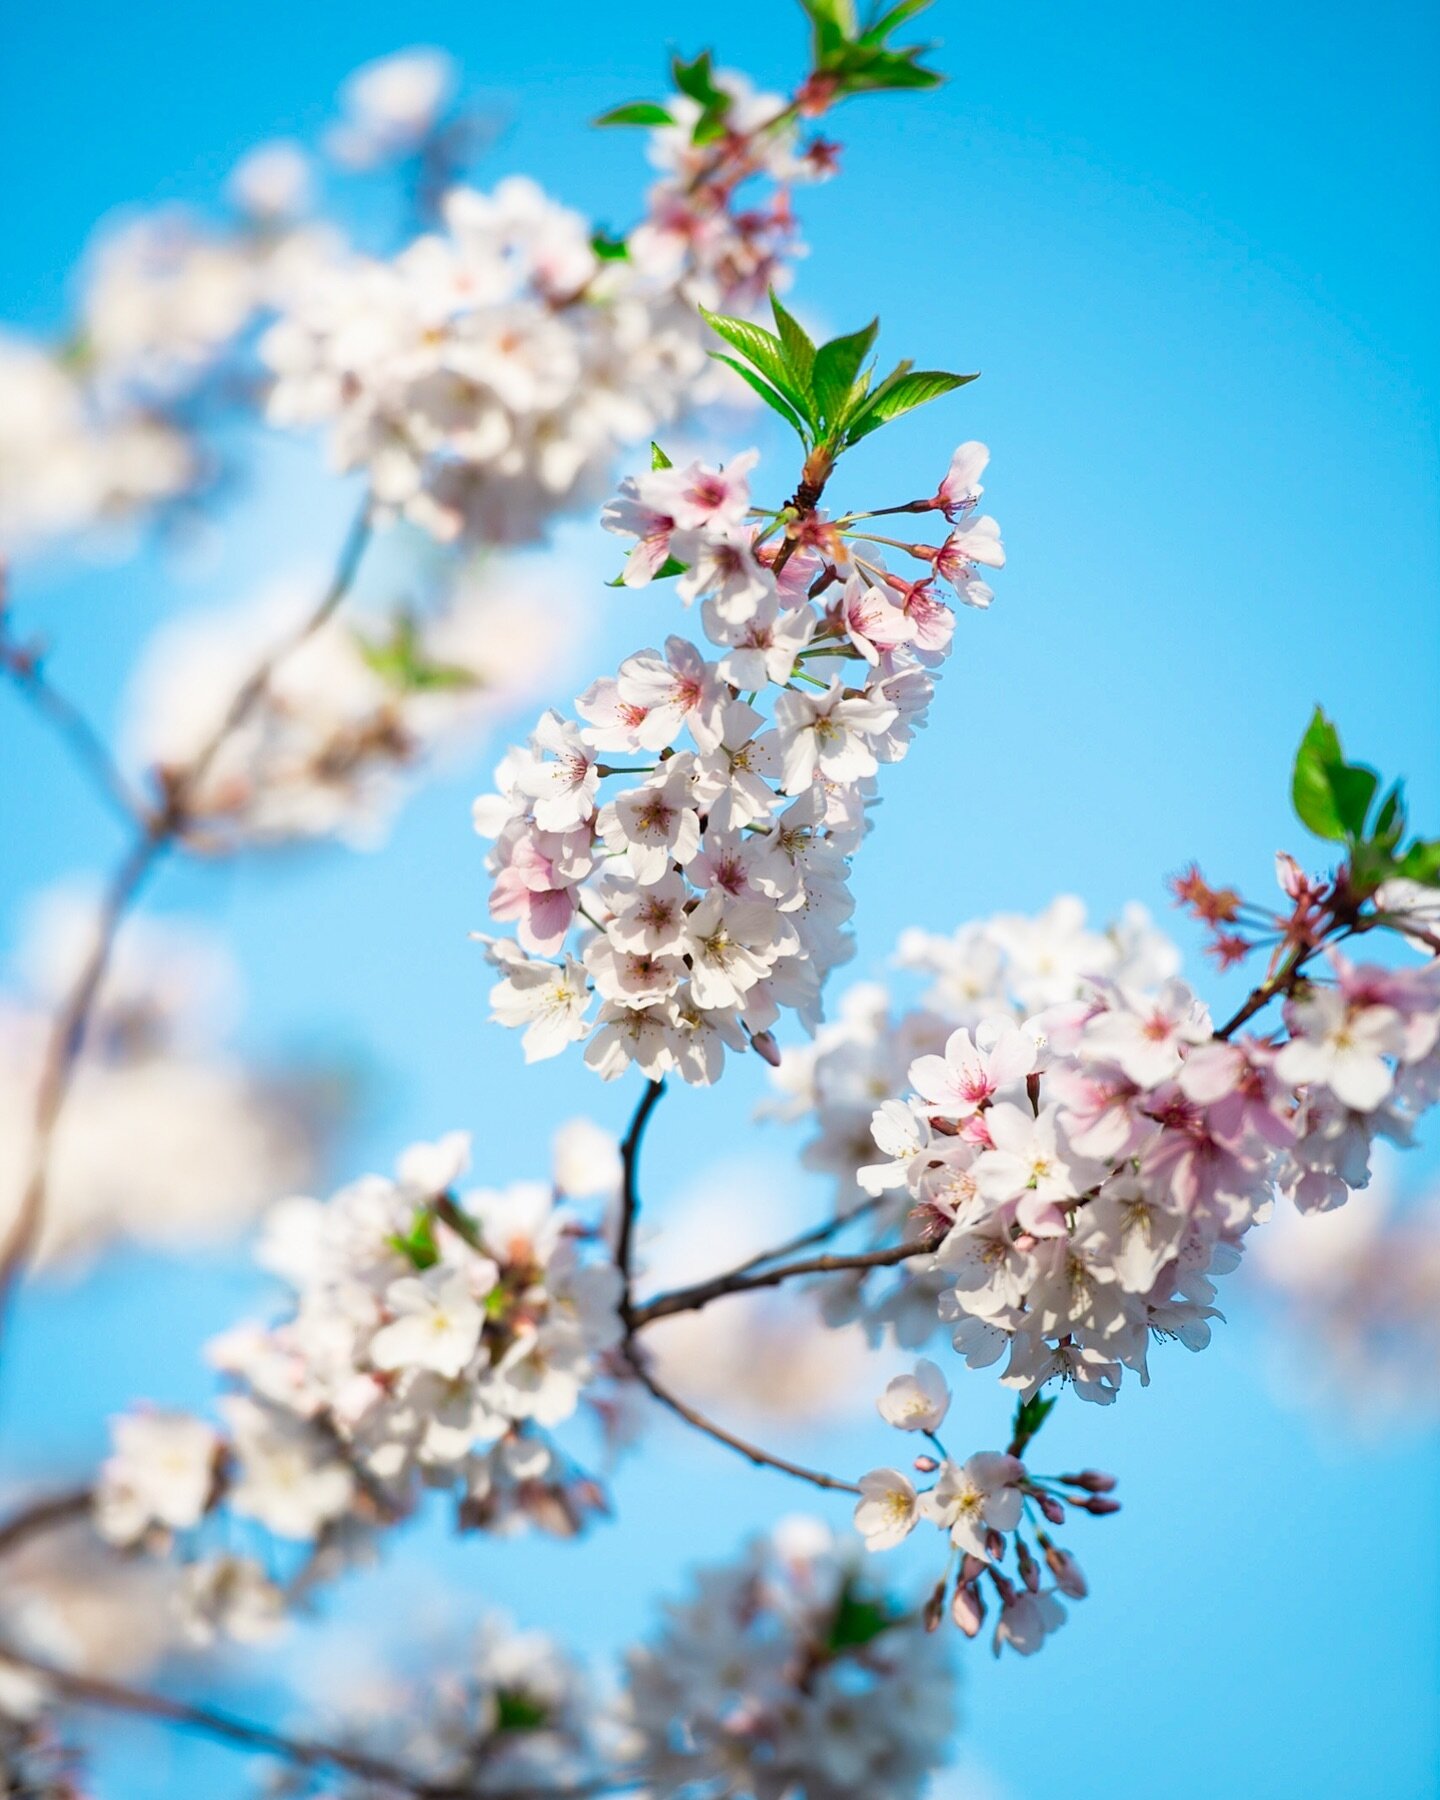 Cherry blossom season is here! 
.
.
.
.
.
#cherryblossom #cherryblossoms #flowerphotography #flowers🌸 #flowerstagram #flowerlovers #fineartphotography #flowerphoto #naturephotography #naturephoto